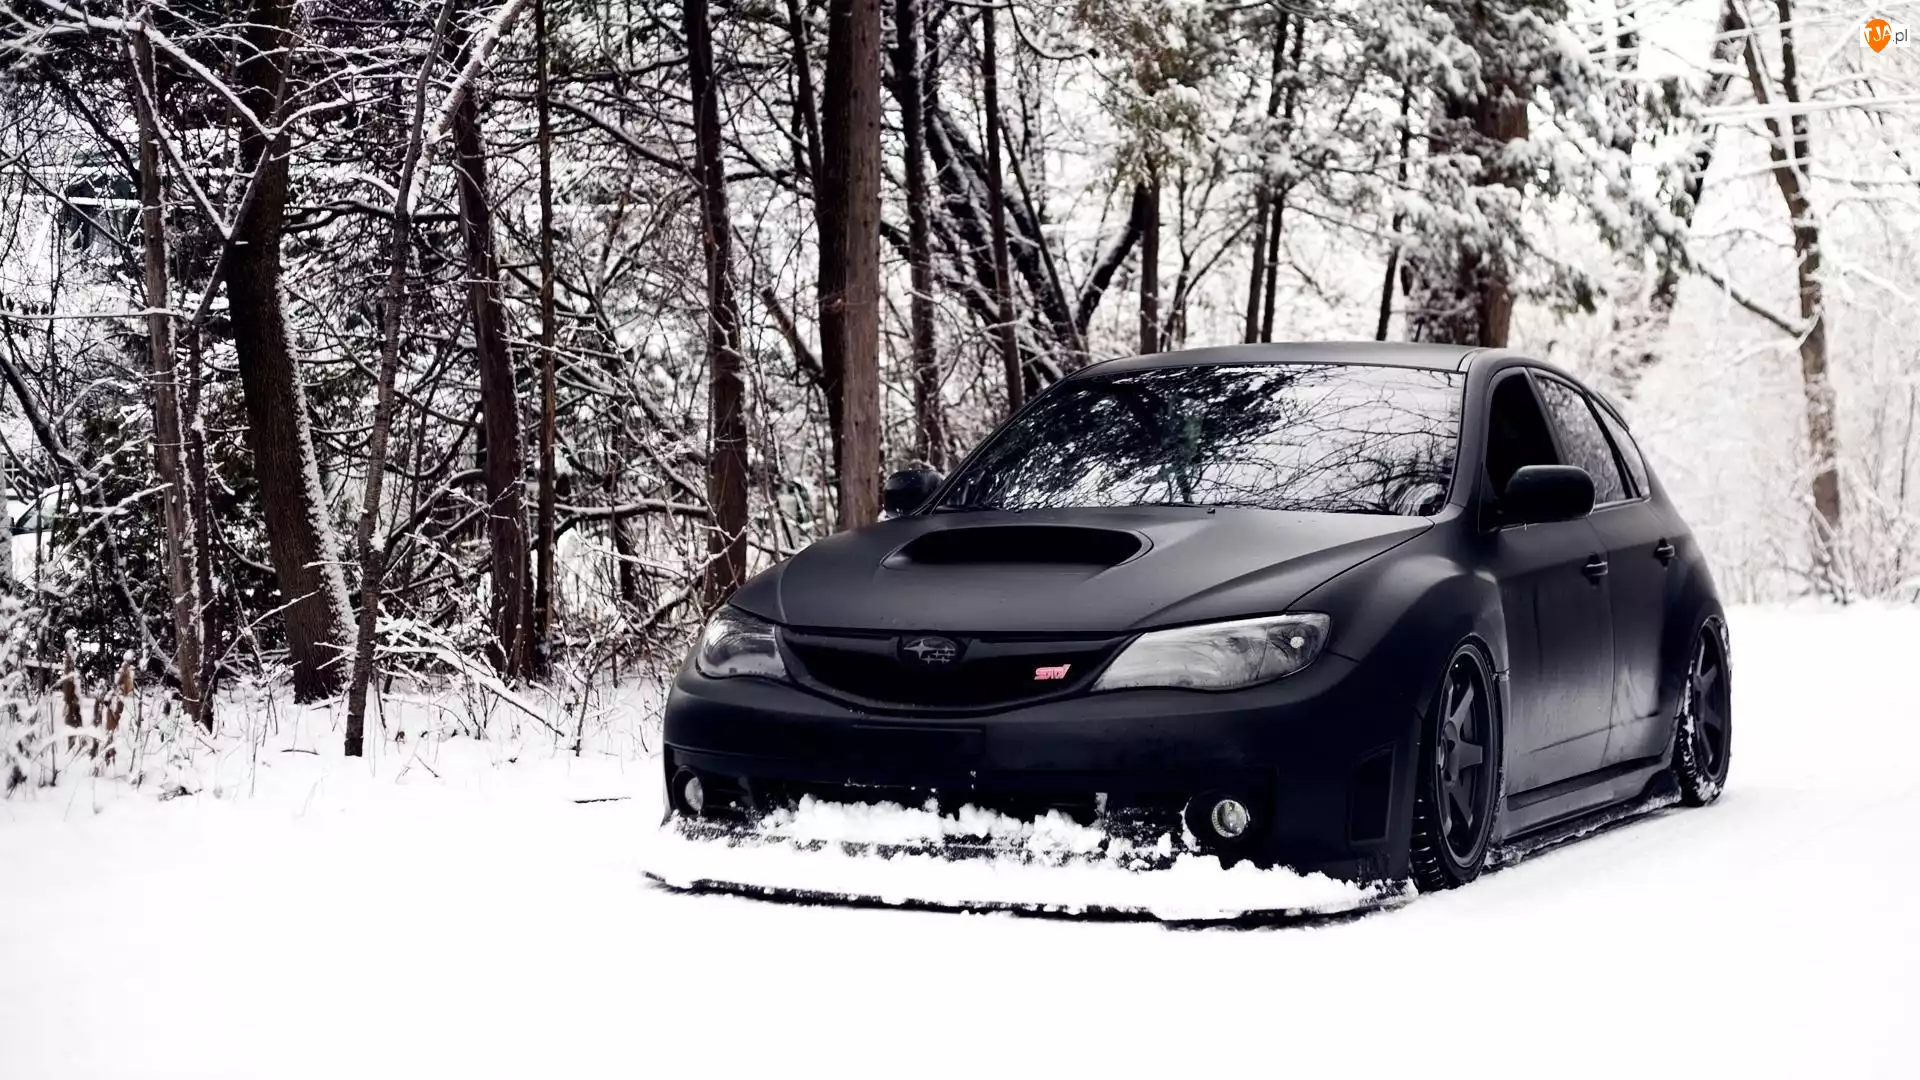 Las, Czarny, Subaru, Samochód, Śnieg